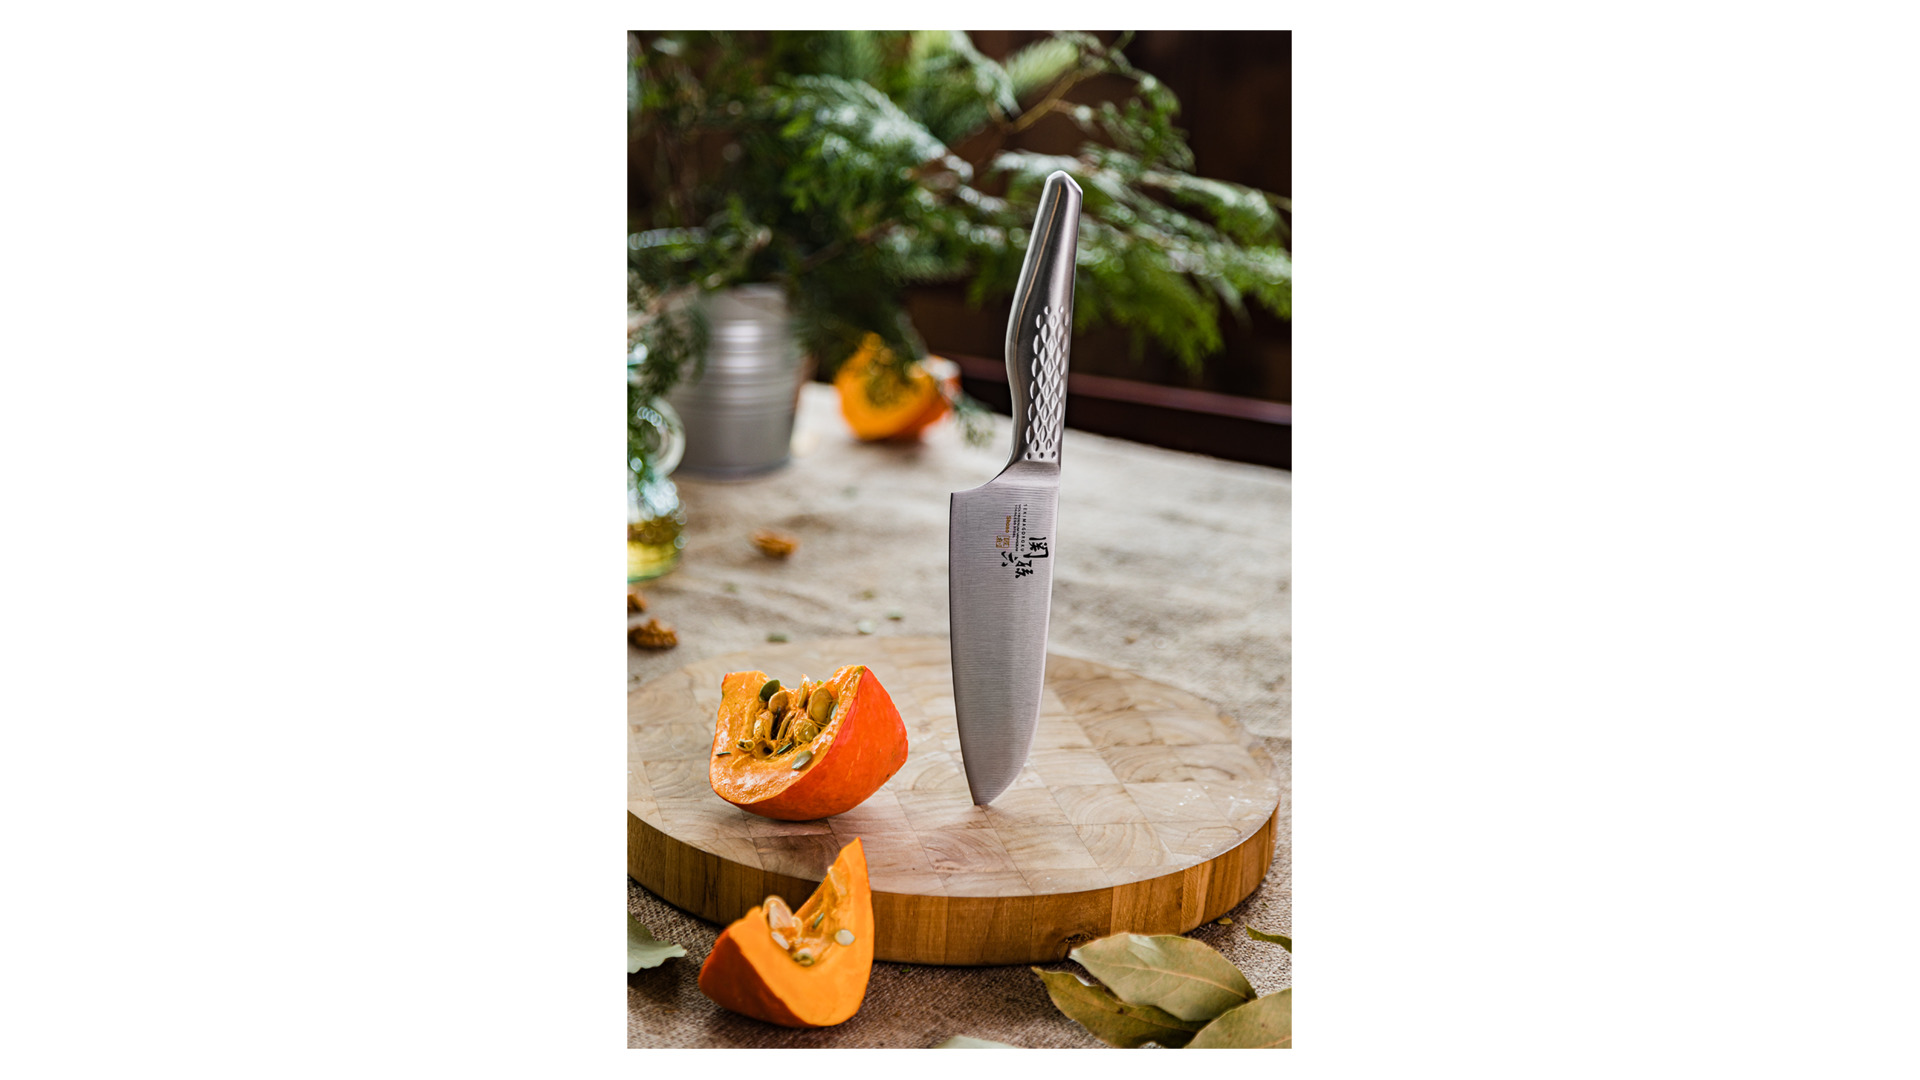 Нож кухонный Сантоку KAI Магороку Шосо 14,5 см, сталь кованая нержавеющая